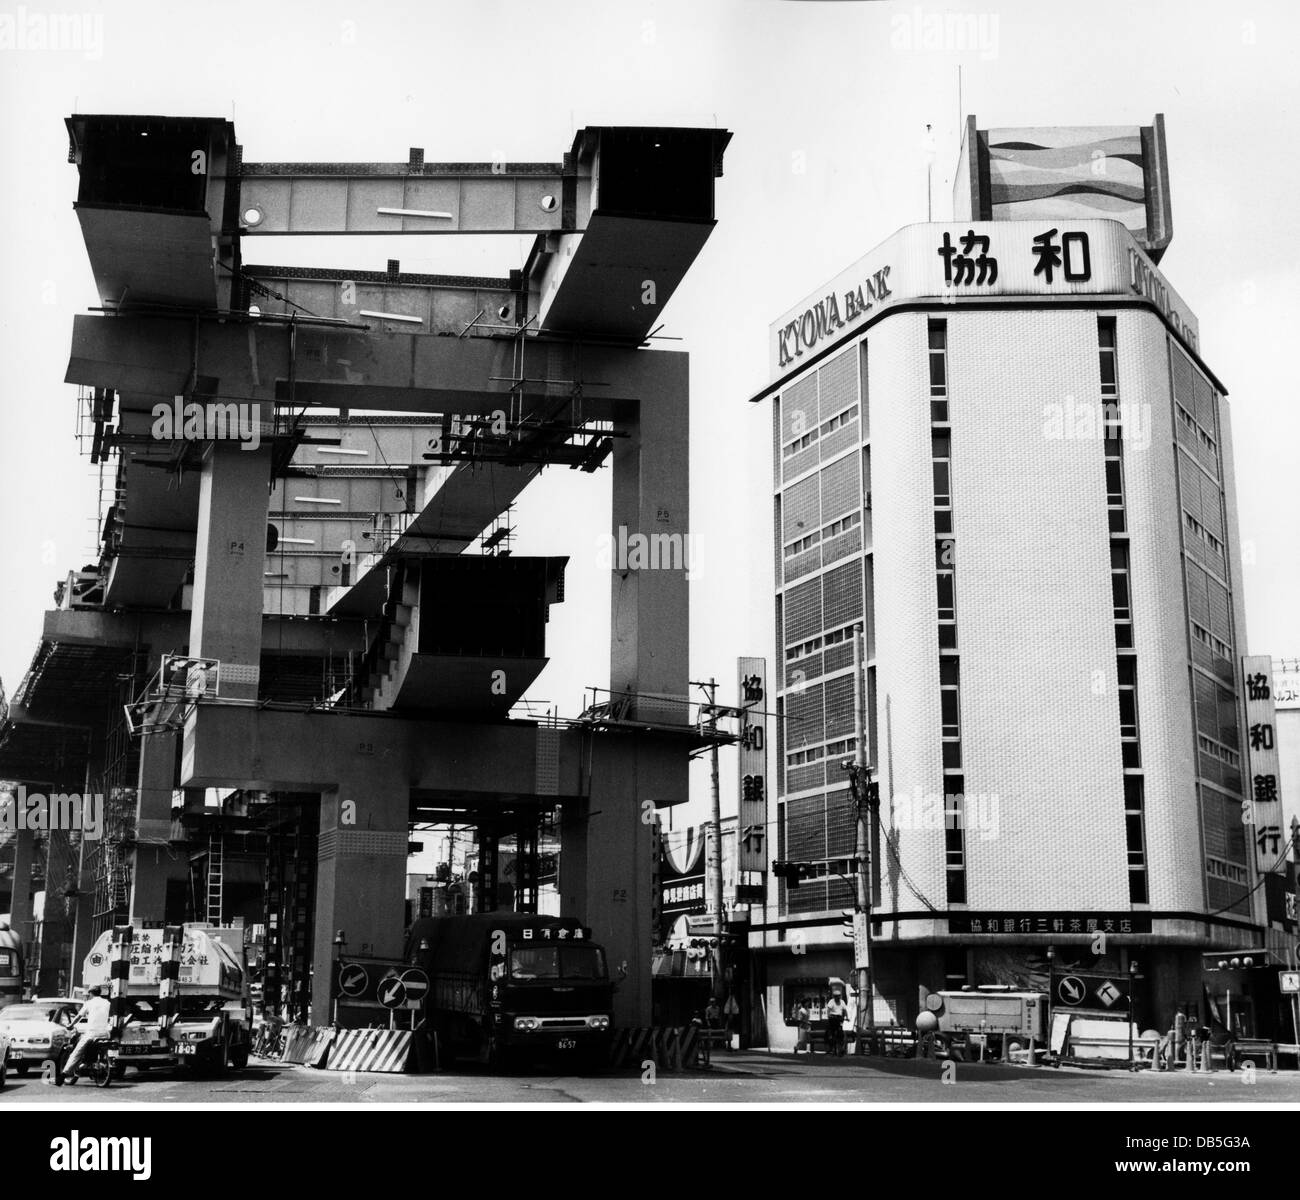 Geografía / viajes, Japón, Tokio, edificios, Kyowa Bank en el barrio especial Setagaya-ku, a la izquierda una carretera elevada en construcción, 1971, Derechos adicionales-Clearences-no disponible Foto de stock